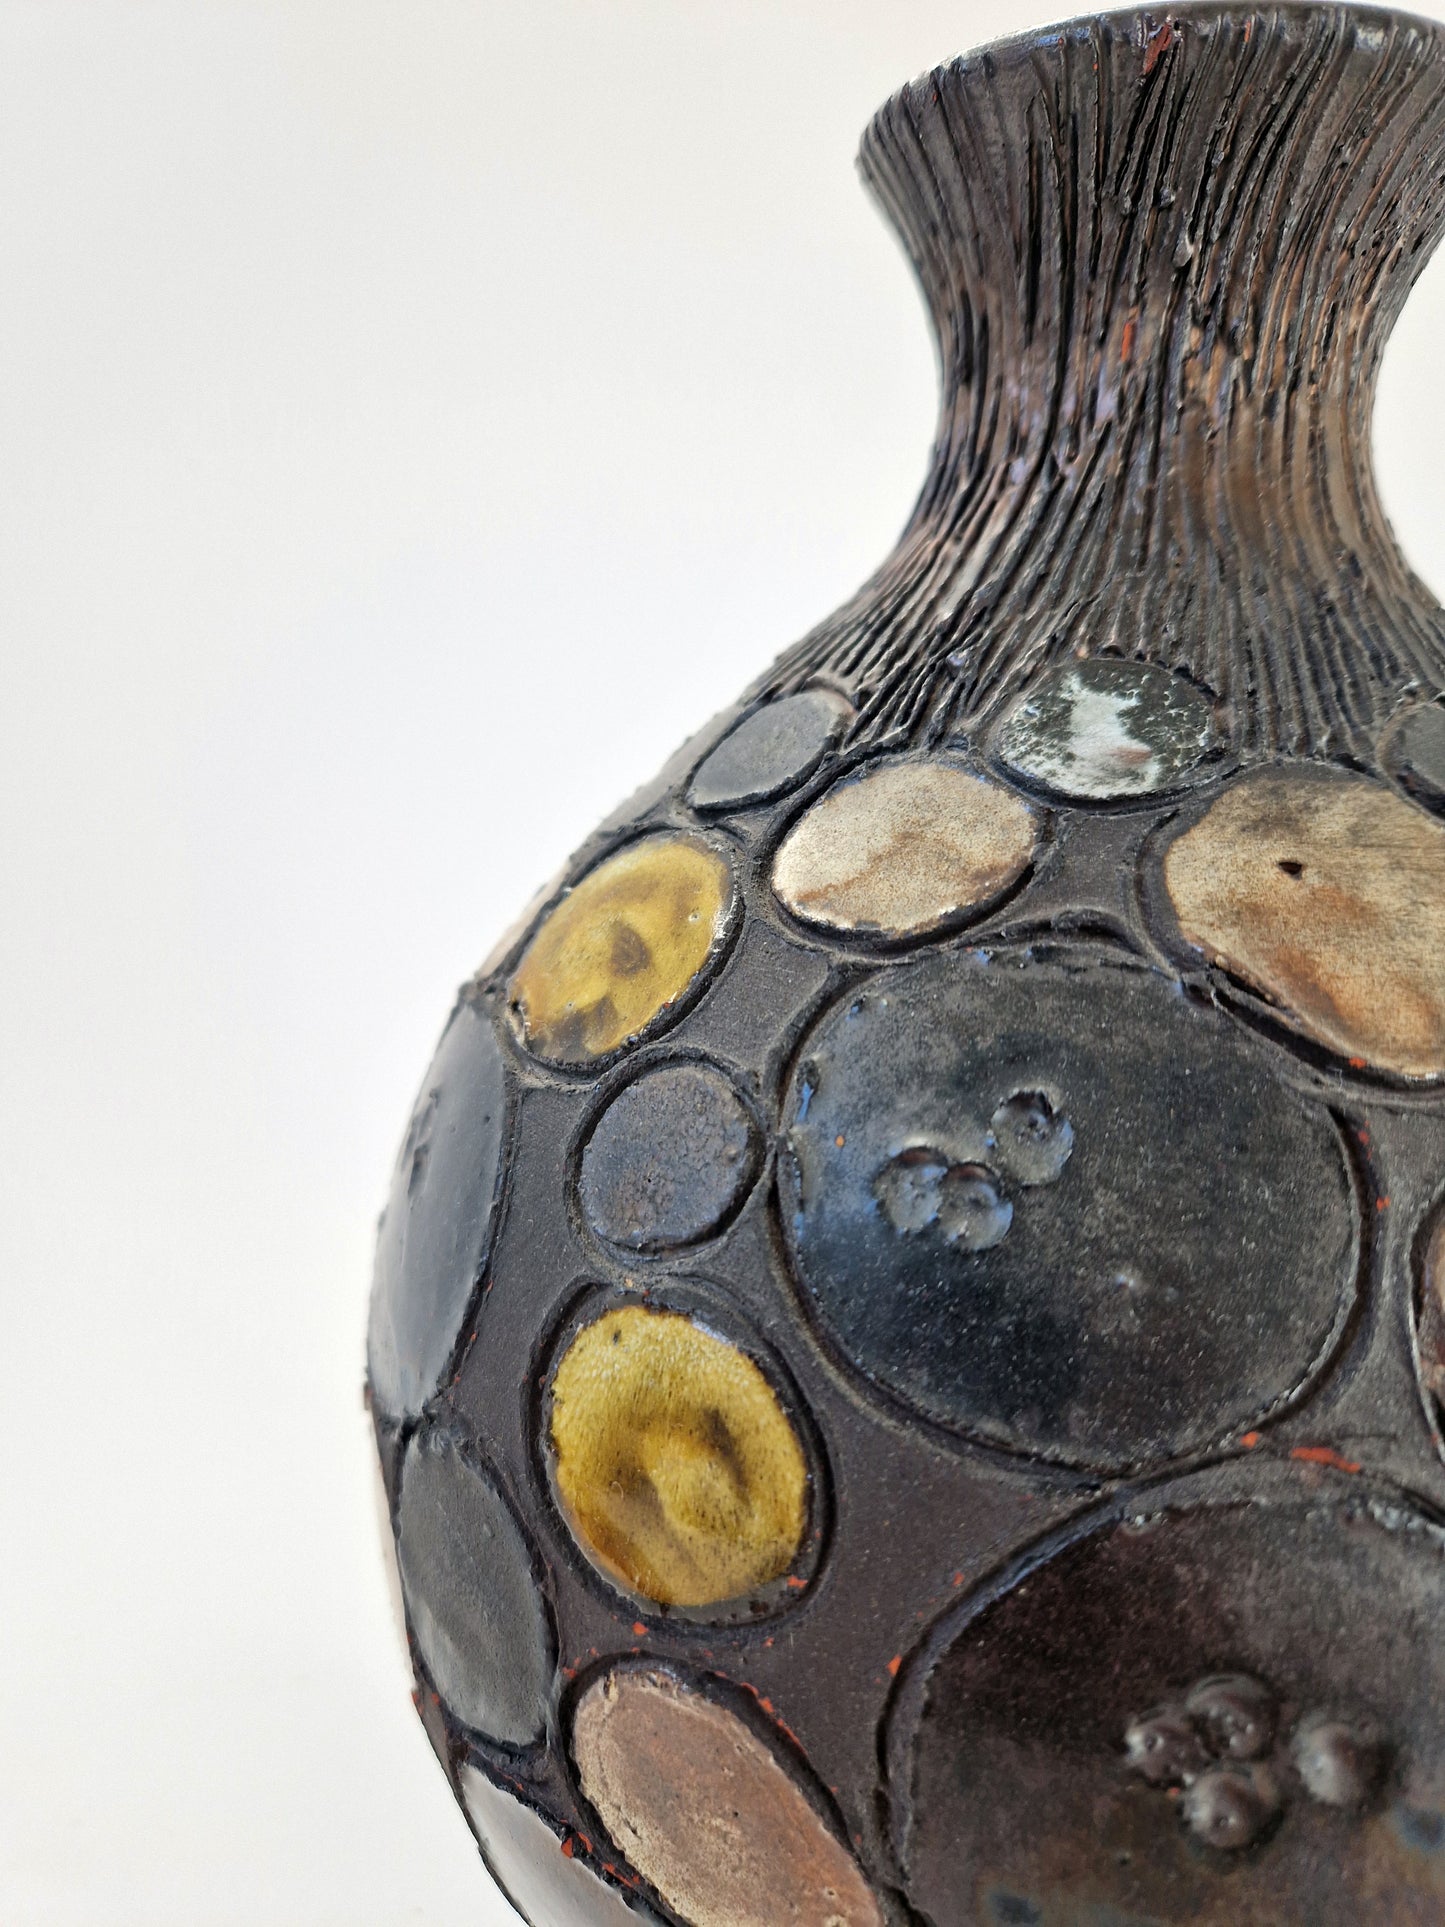 Perignem - Vase aux médaillons en céramique